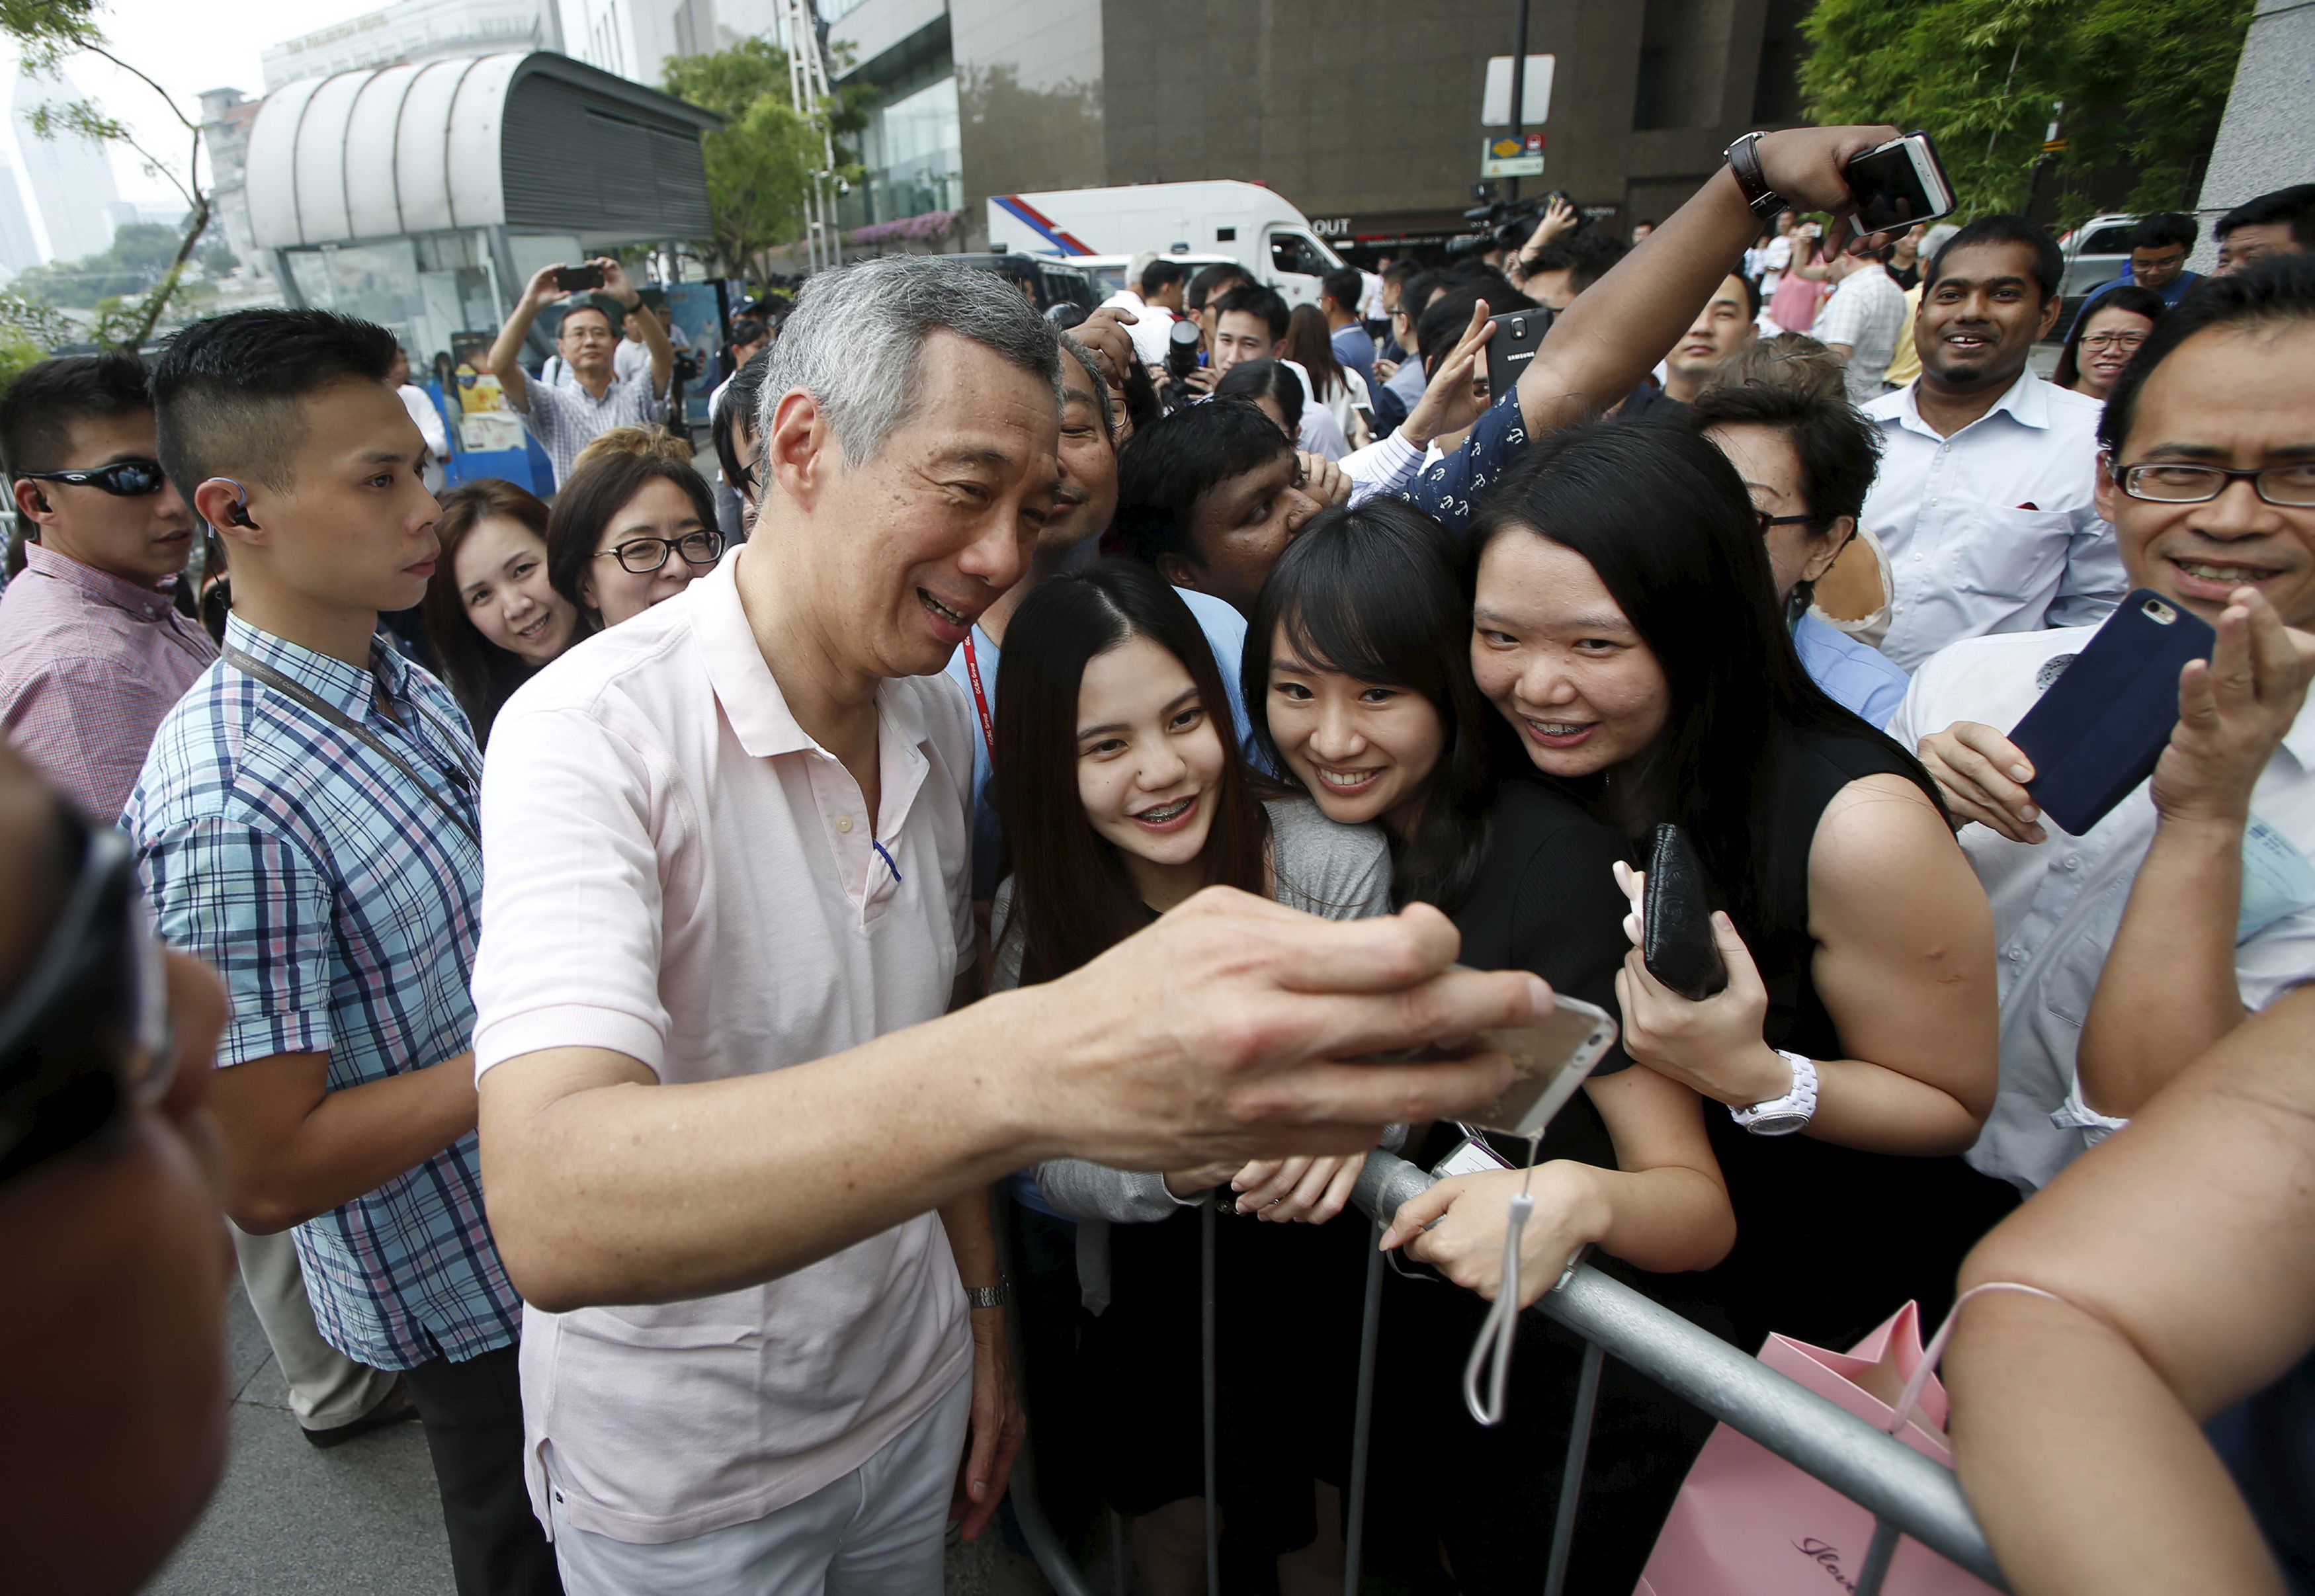 Thủ tướng Lý Hiển Long, lãnh đạo Đảng cầm quyền PAP, chụp ảnh selfie với các cử tri sau cuộc tuần hành tại khu trung tâm thương mại của Singapore ngày 8-9 - Ảnh: Reuters